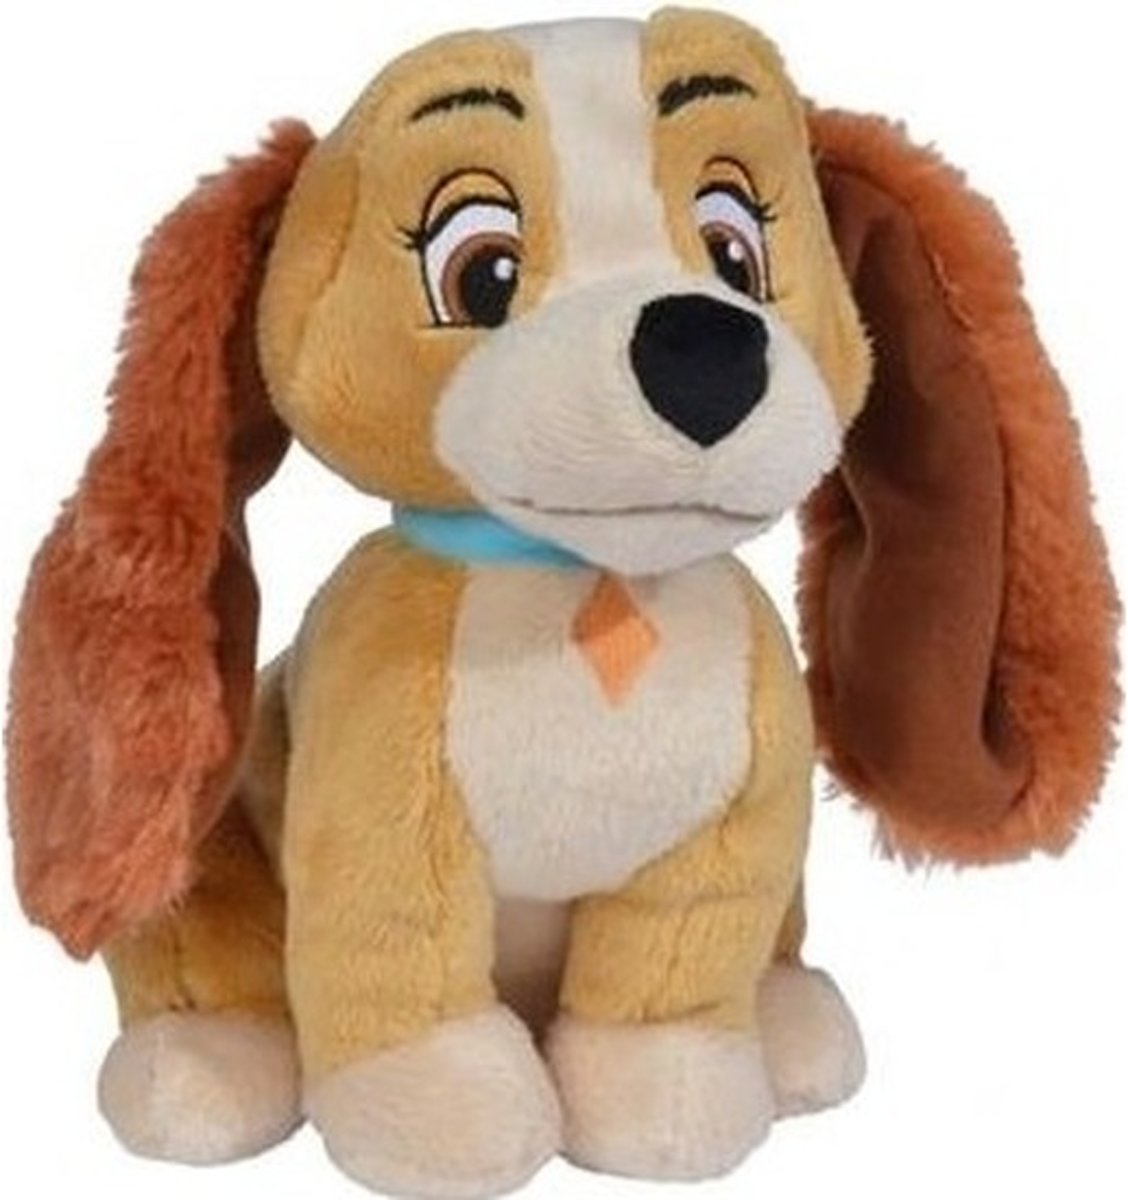 Pluche   Lady hond knuffel 24 cm speelgoed - Lady en de Vagebond - Cocker spaniel honden cartoon knuffels - Speelgoed voor kinderen